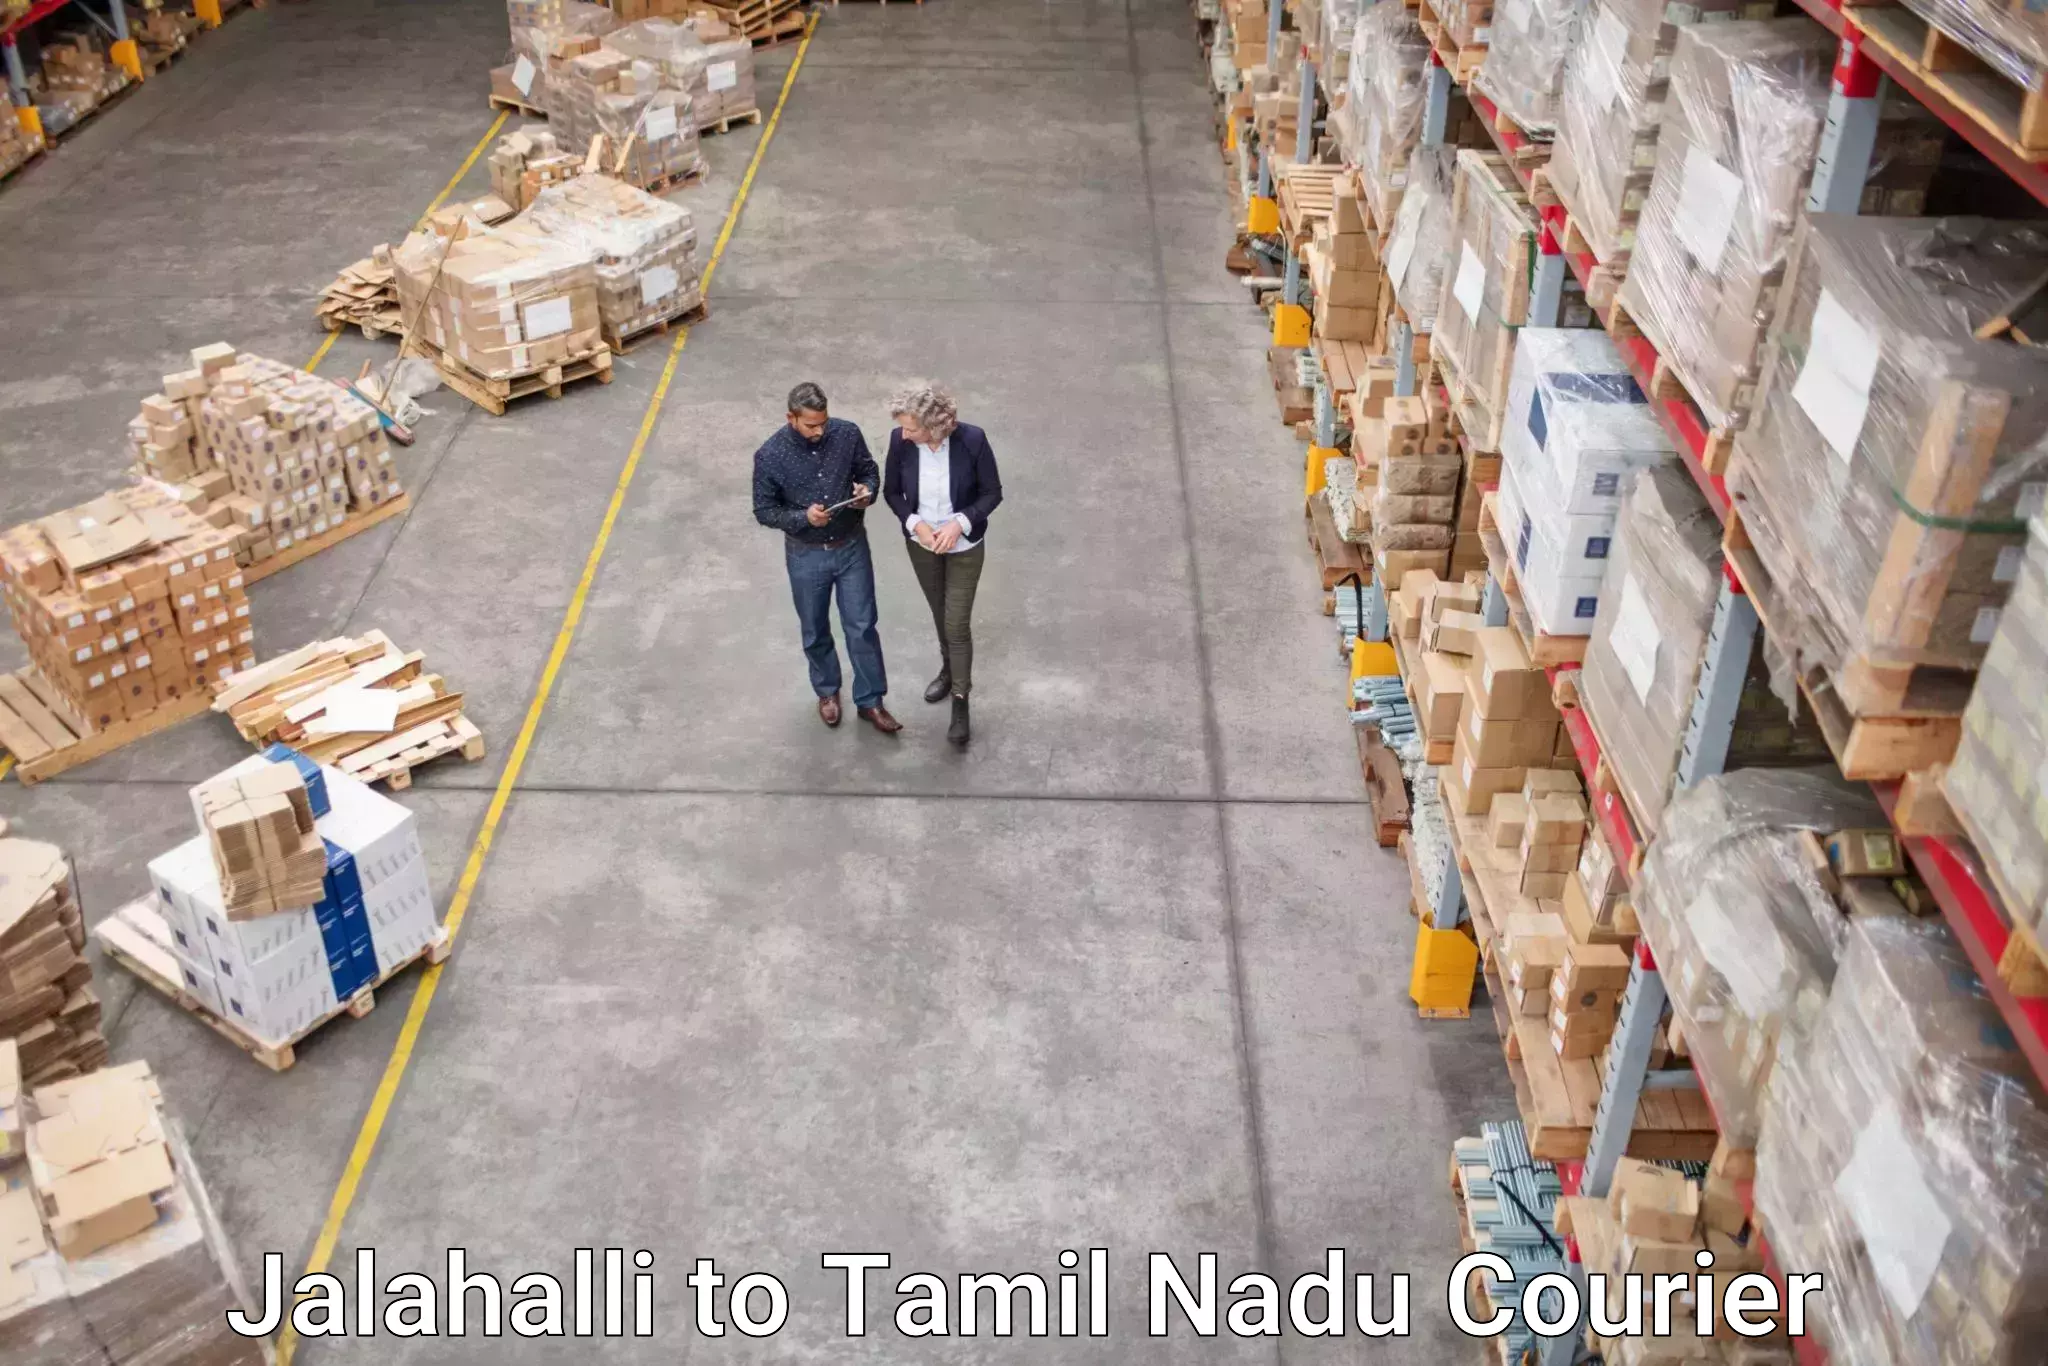 Courier app Jalahalli to Tamil Nadu